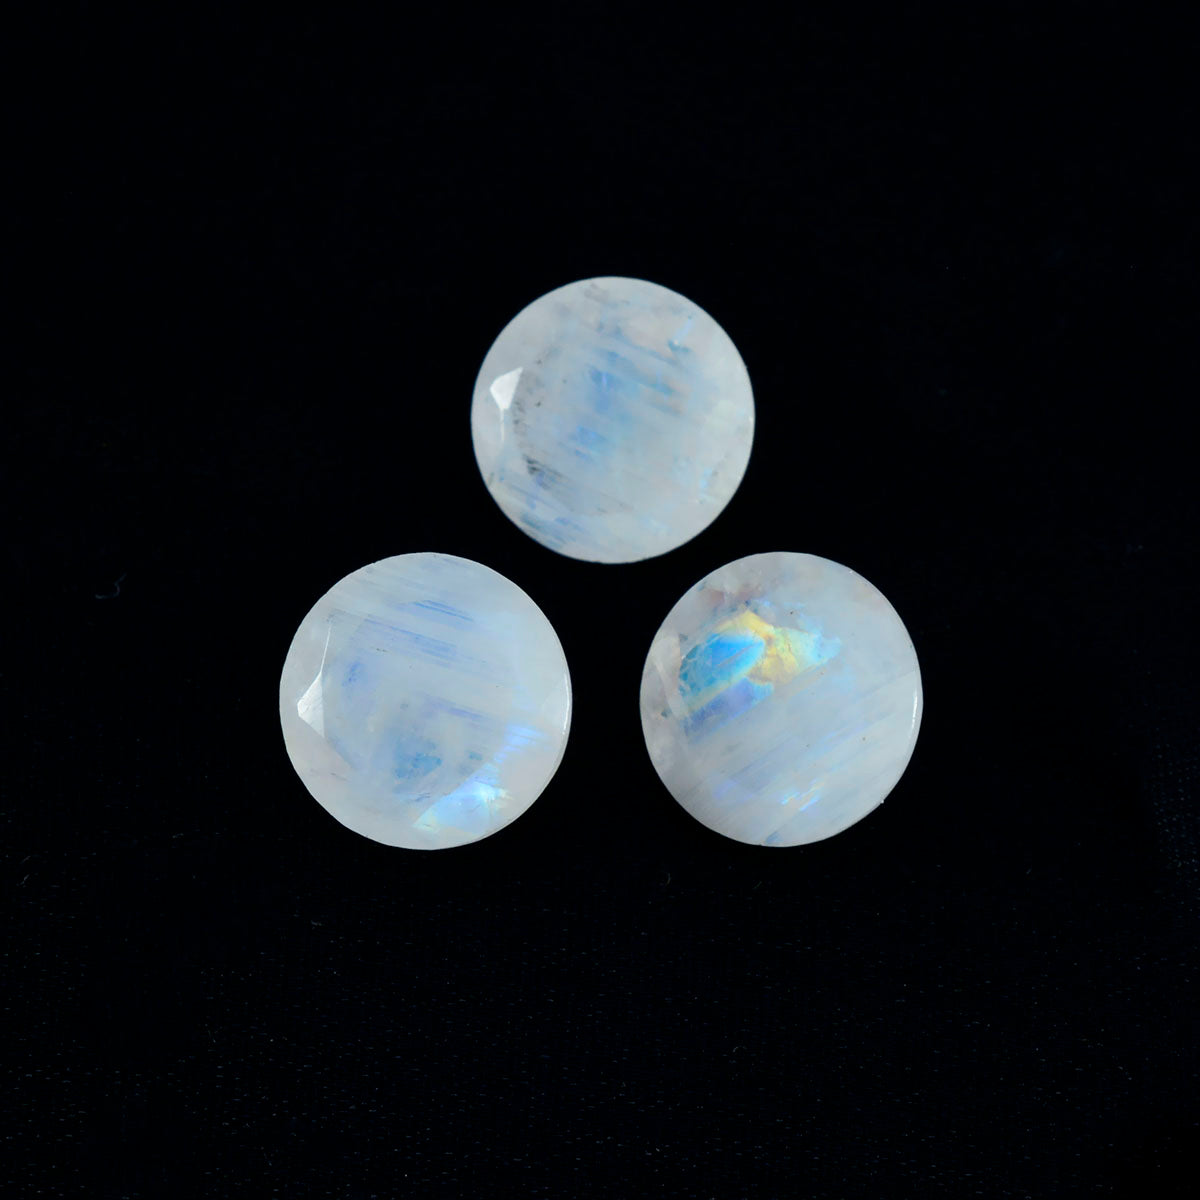 Riyogems 1 Stück weißer Regenbogen-Mondstein, facettiert, 11 x 11 mm, runde Form, Edelstein von erstaunlicher Qualität